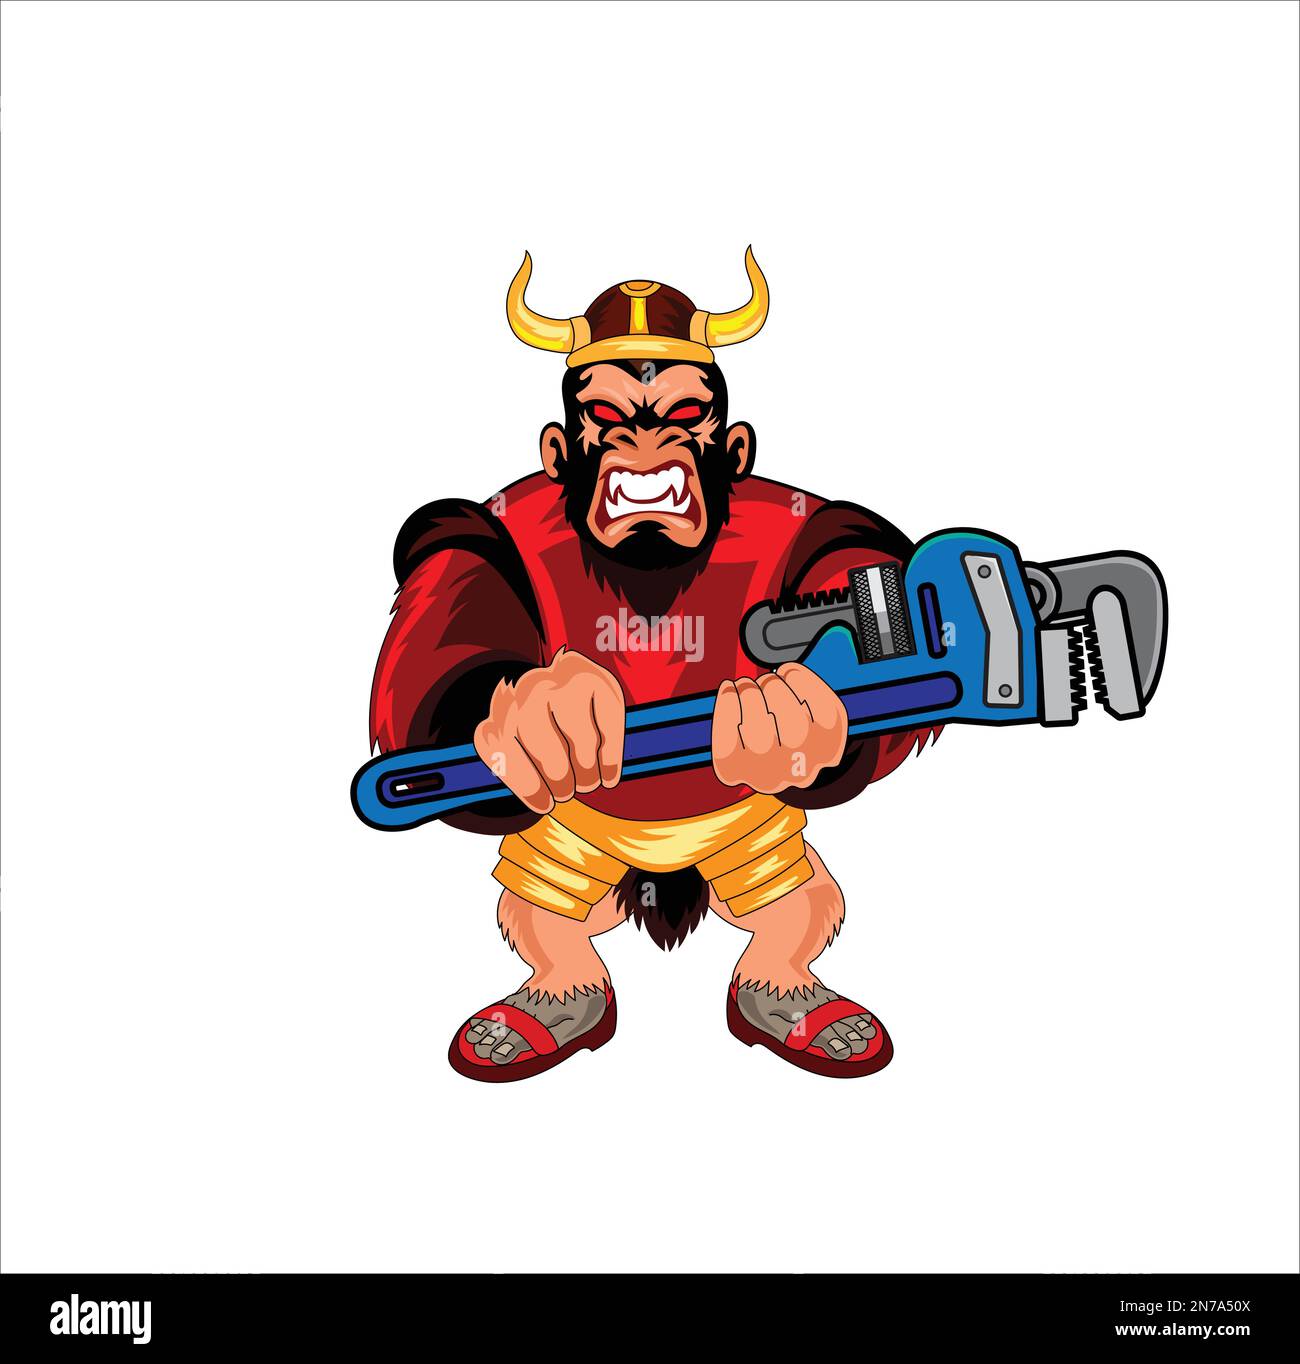 Monkey plumber mascot vector illustration Stock Vector